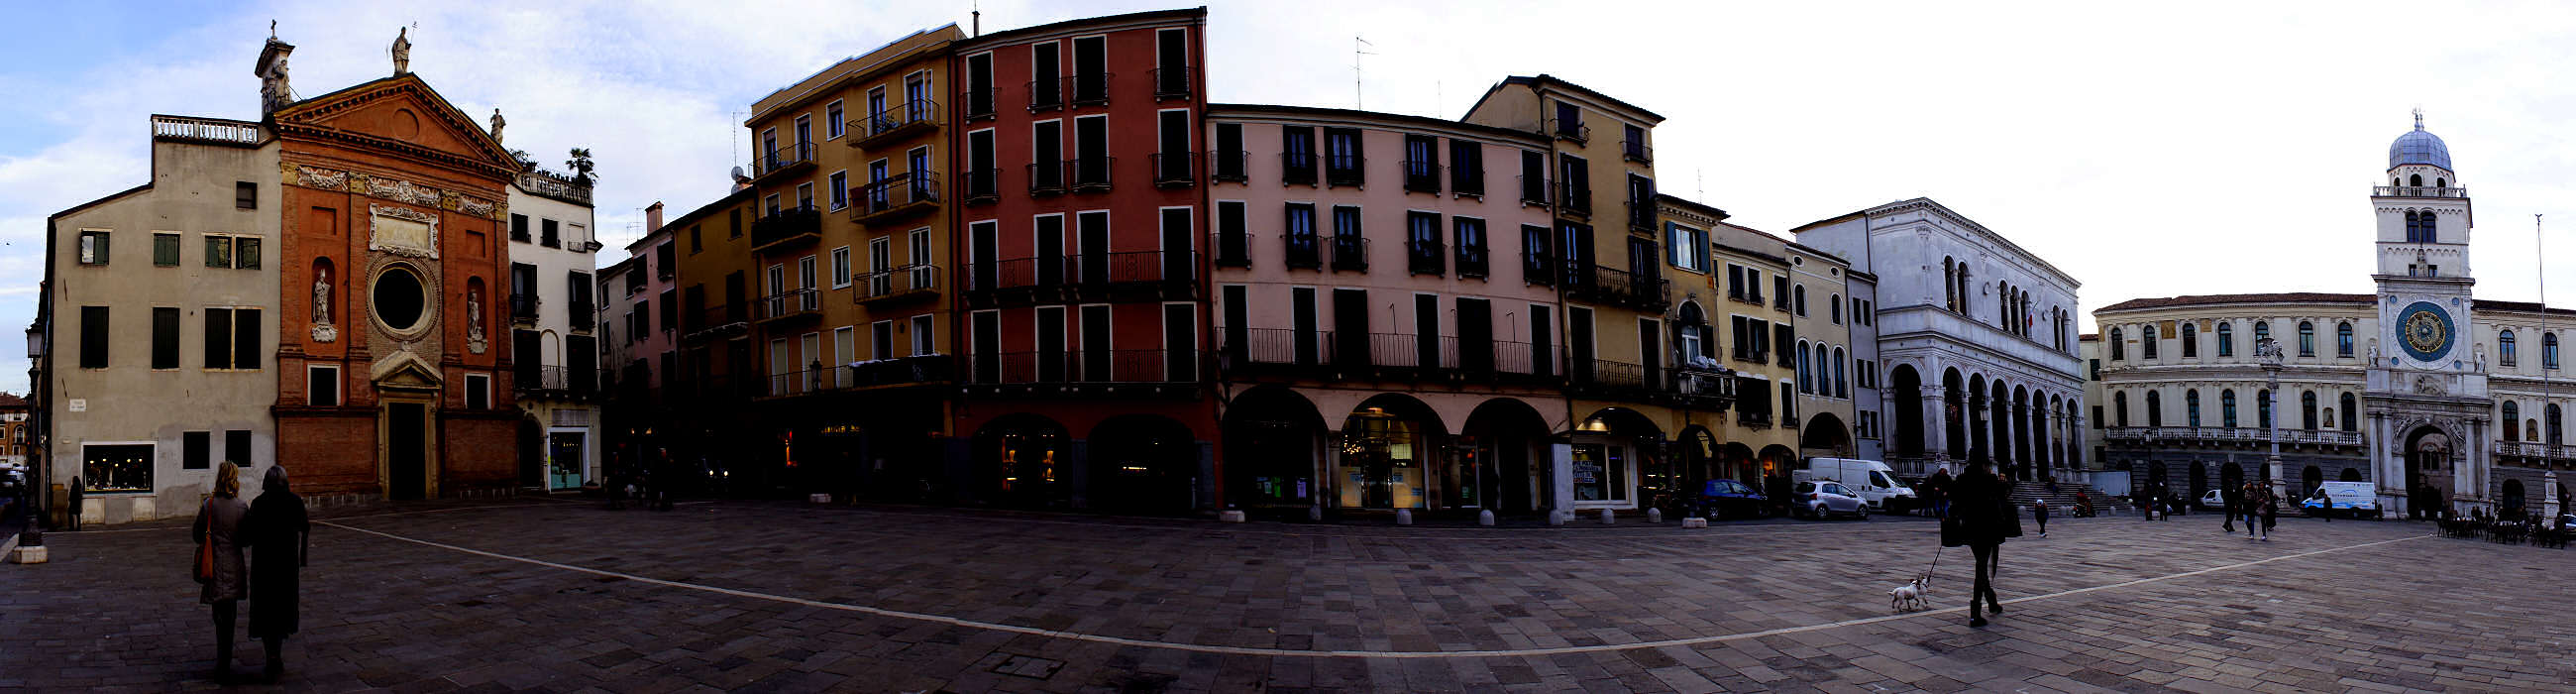 Padova, piazza Signori torre dell'Orologio